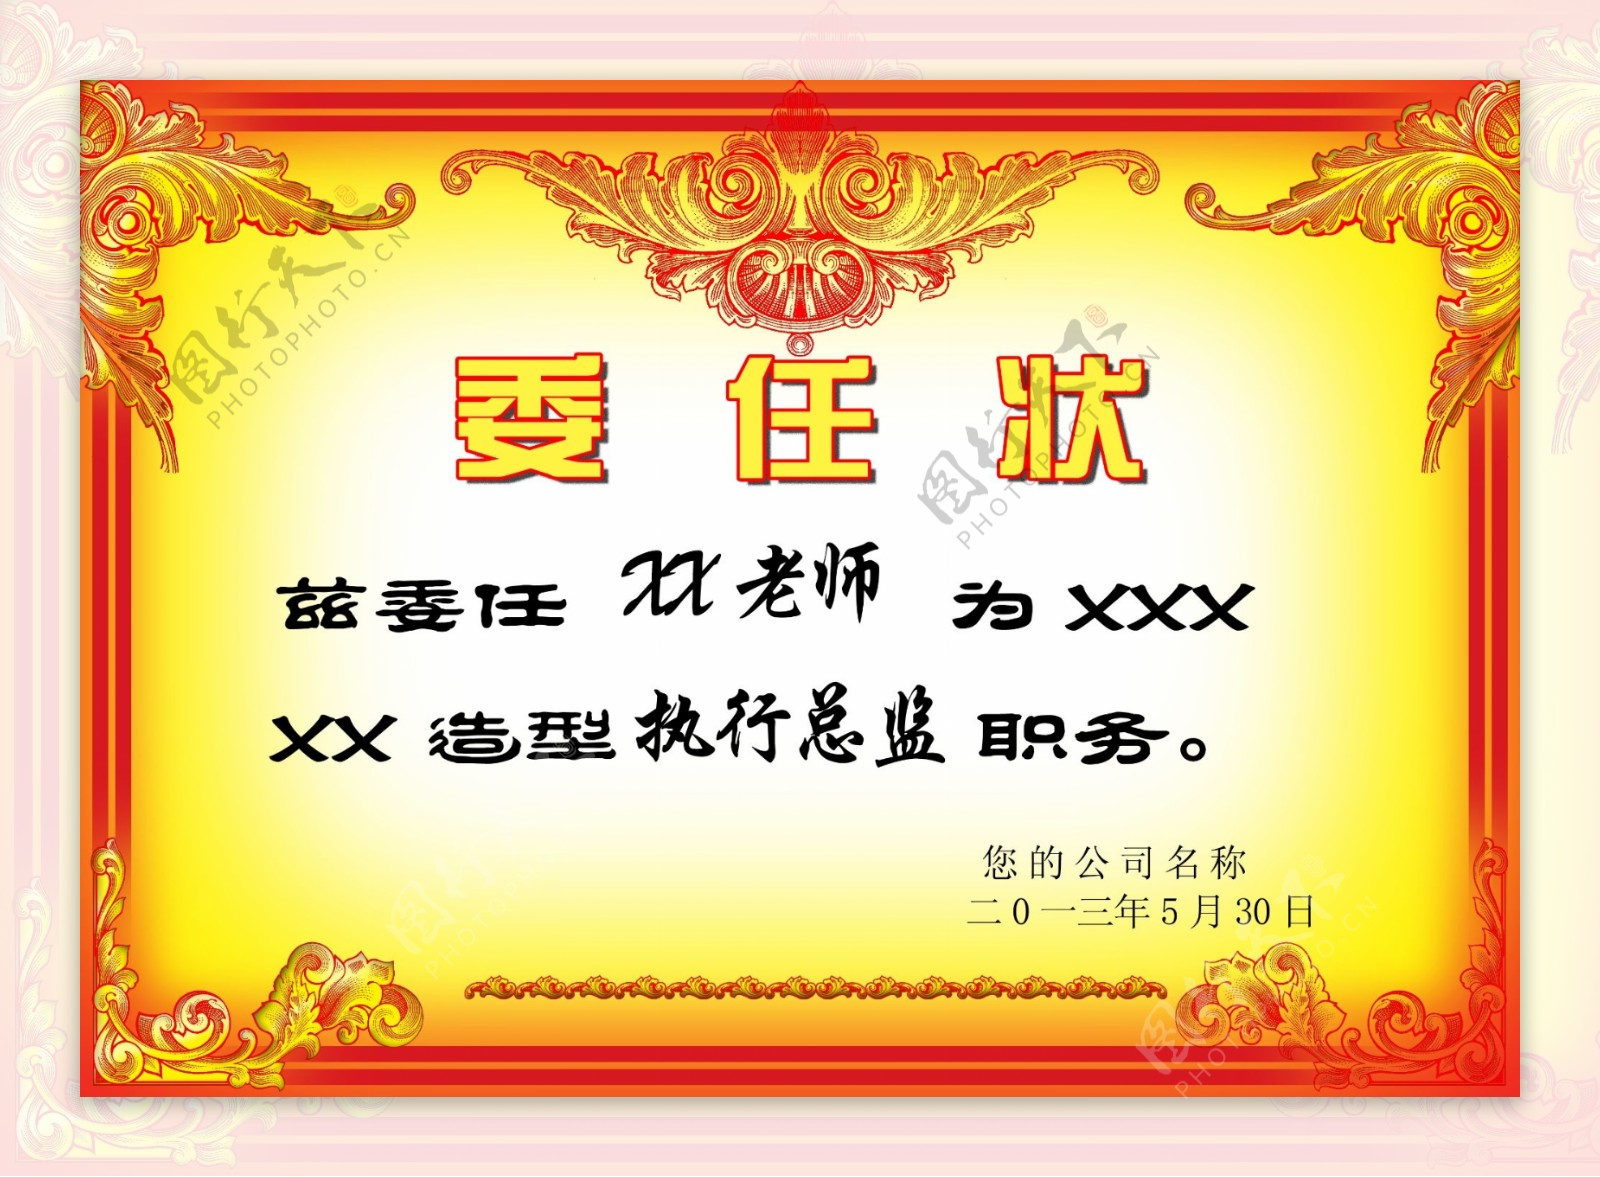 【立德树人】母亲节将至，小学生手绘奖状表达感恩之情 - 武汉文明网